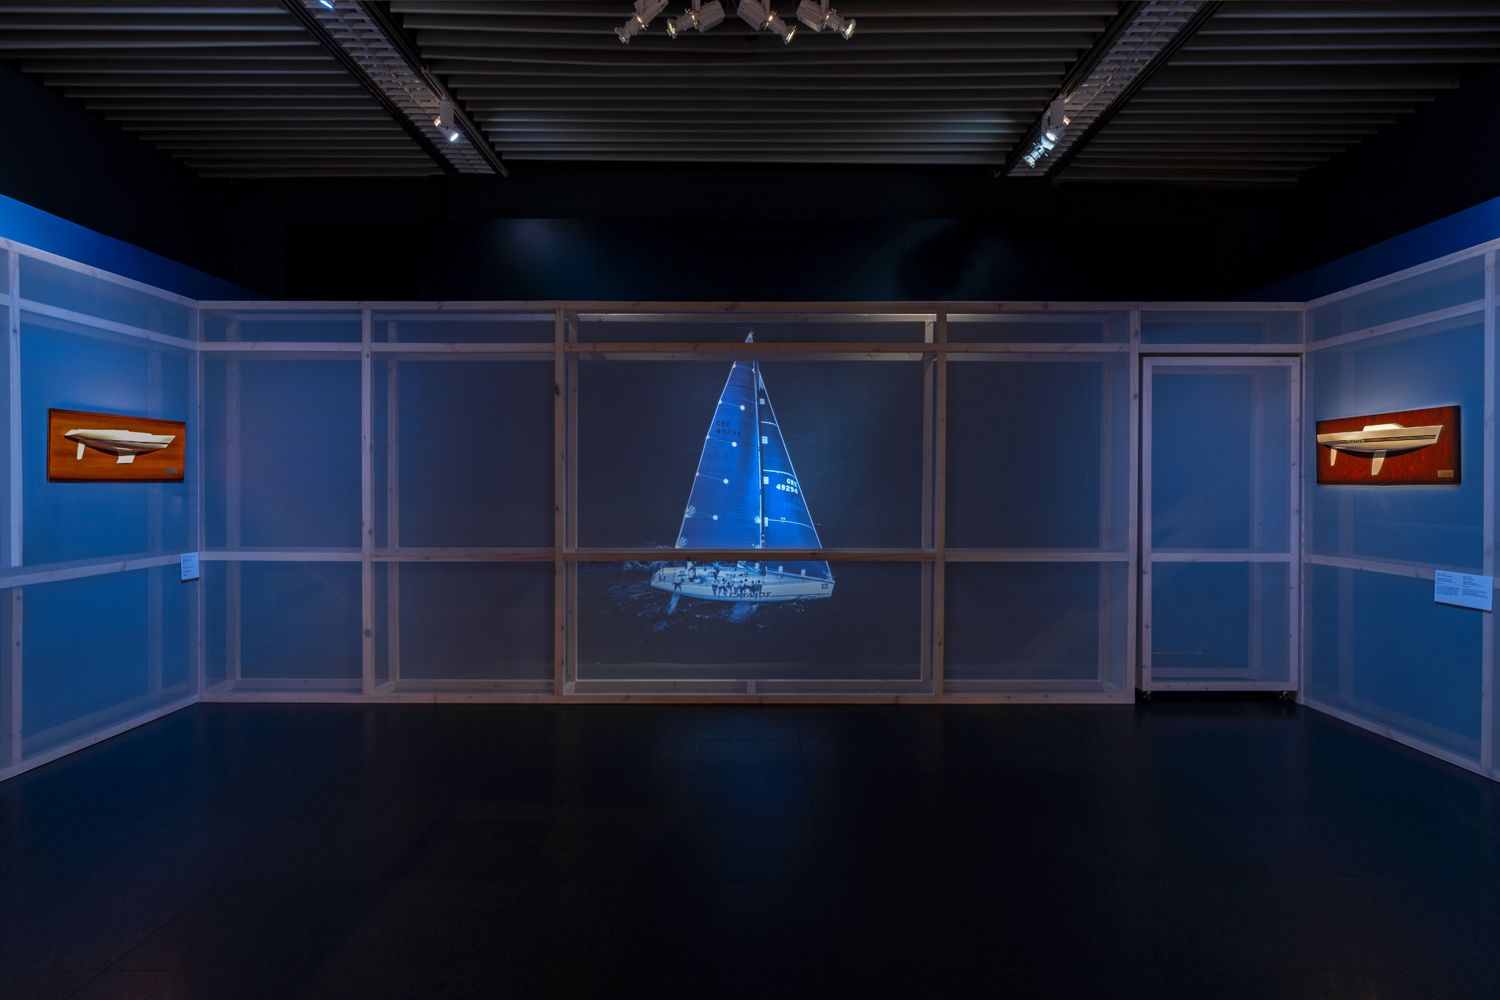 Το σκάφος του Γιάννη Κωστόπουλου «Ωκύαλος» στην έκθεση του Μουσείου Μπενάκη